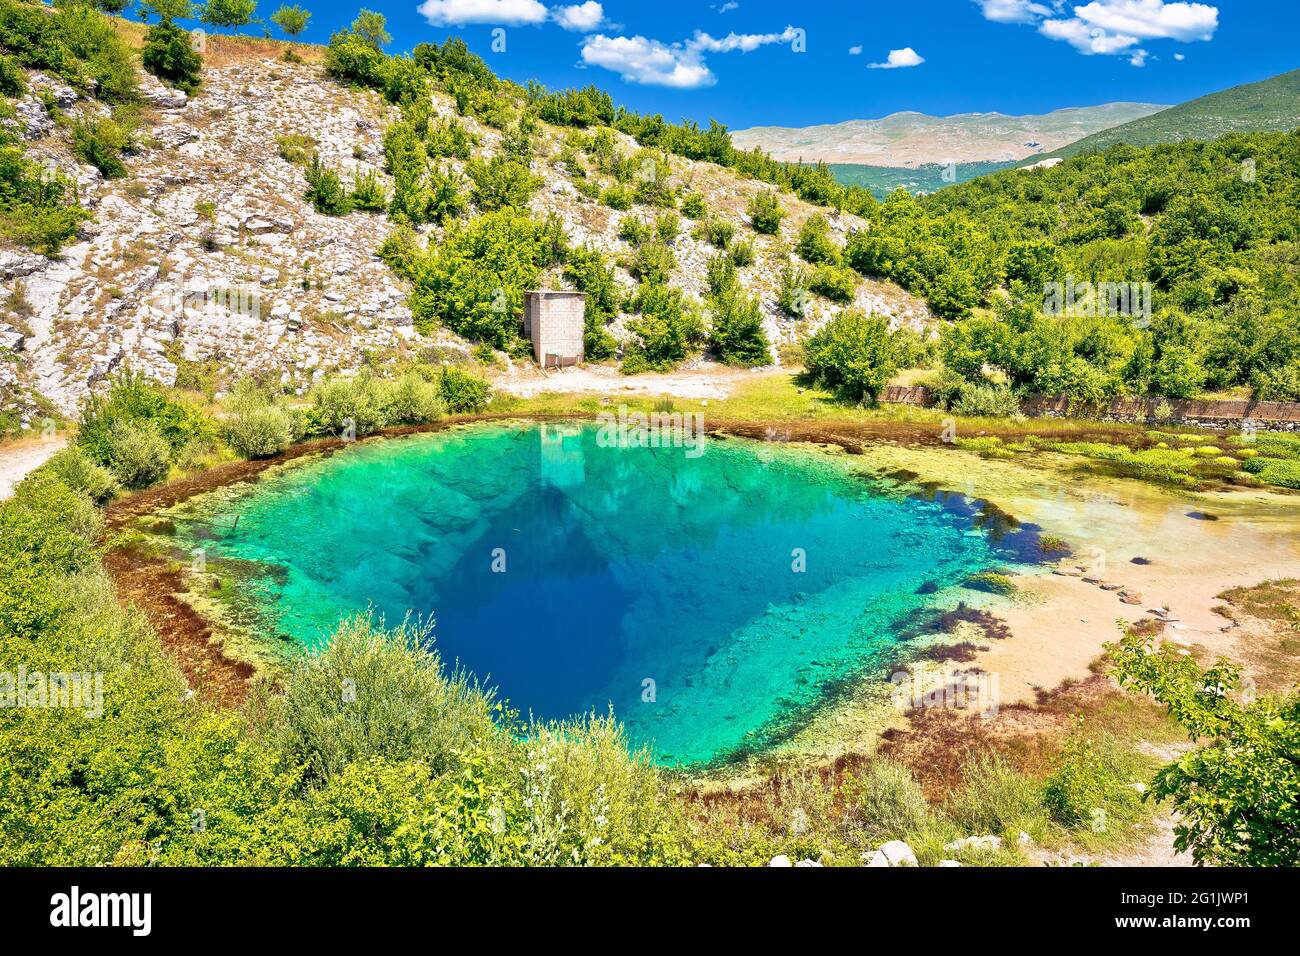 Cetina Quelle Wasser Loch grüne Landschaft Blick, dalmatinisches Hinterland von Kroatien Stockfoto